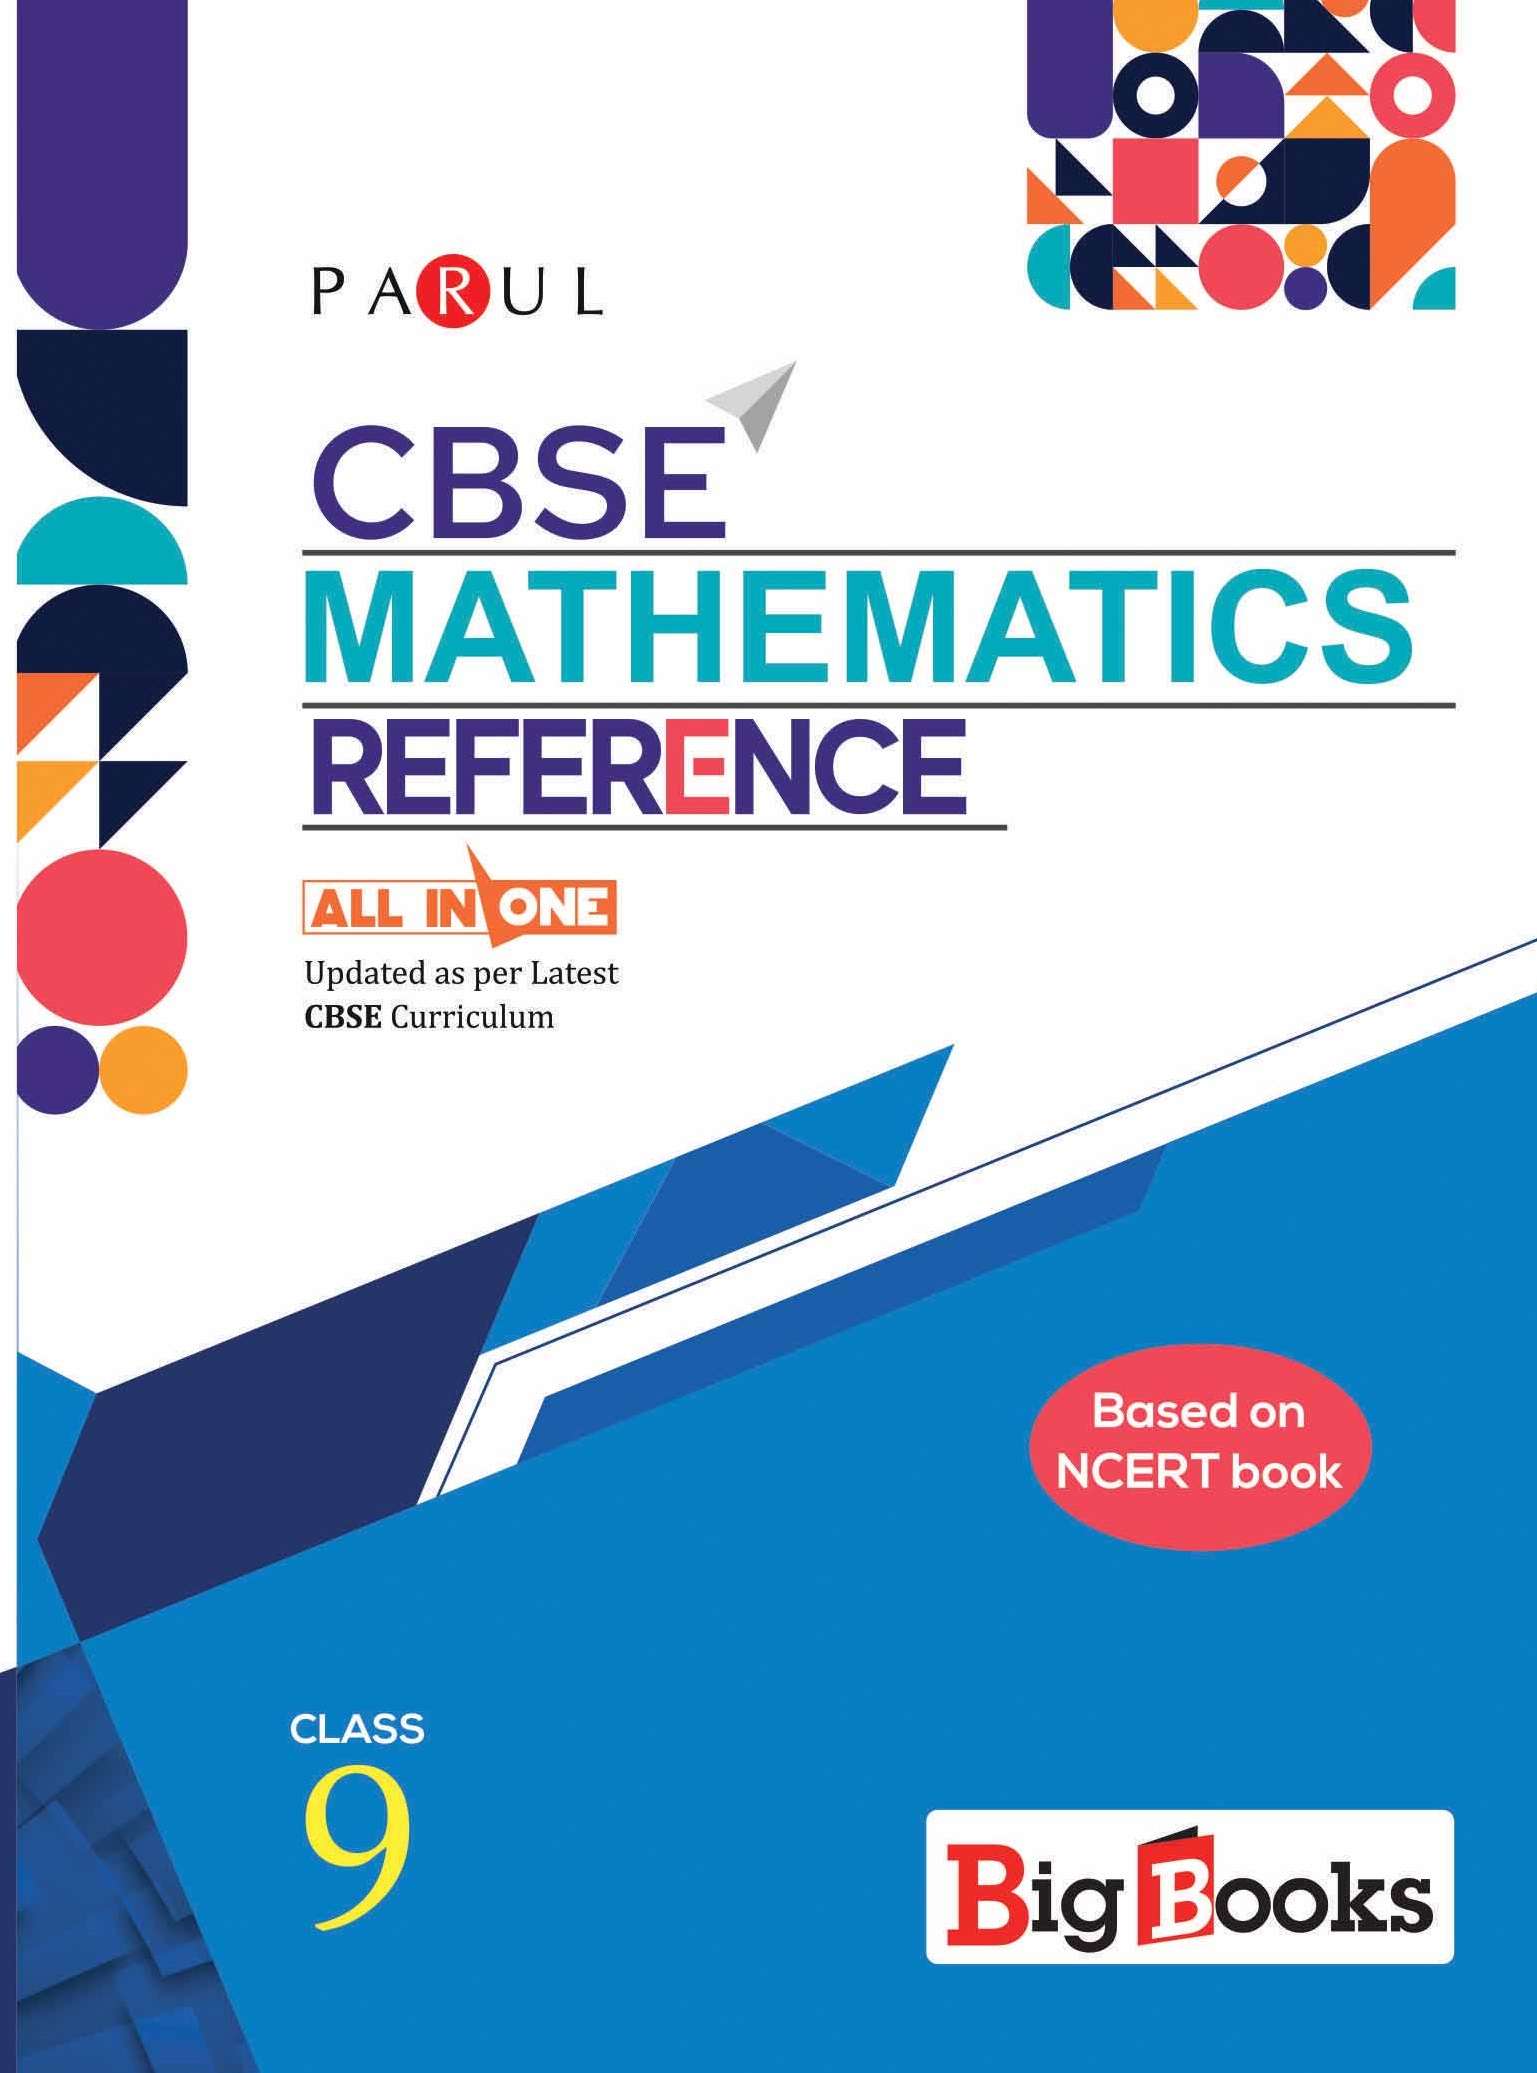 Best CBSE Mathematics book for 9